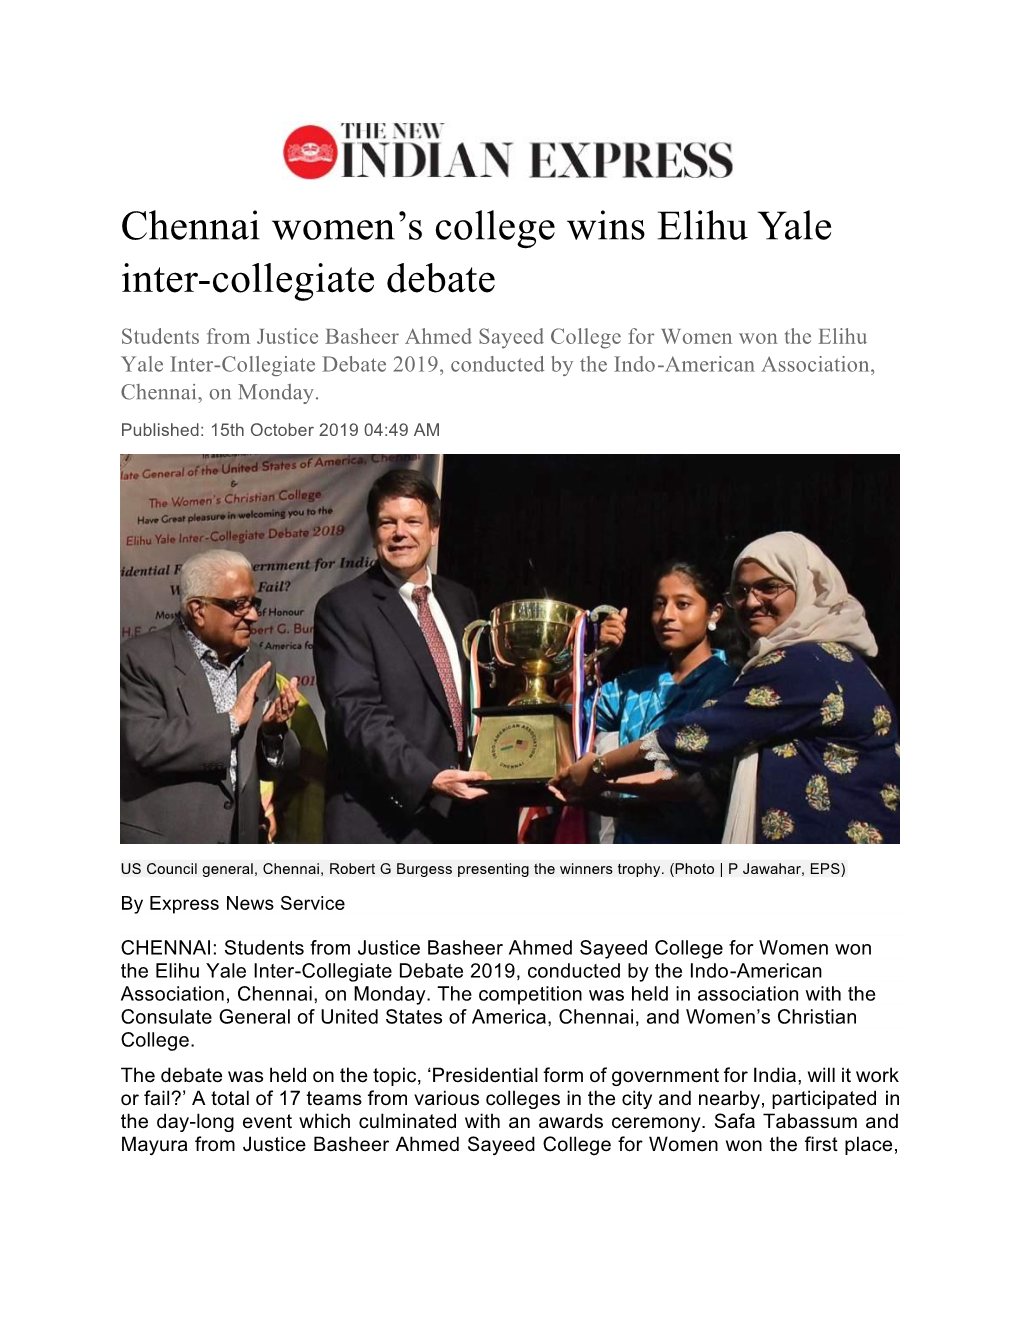 Chennai Women's College Wins Elihu Yale Inter-Collegiate Debate